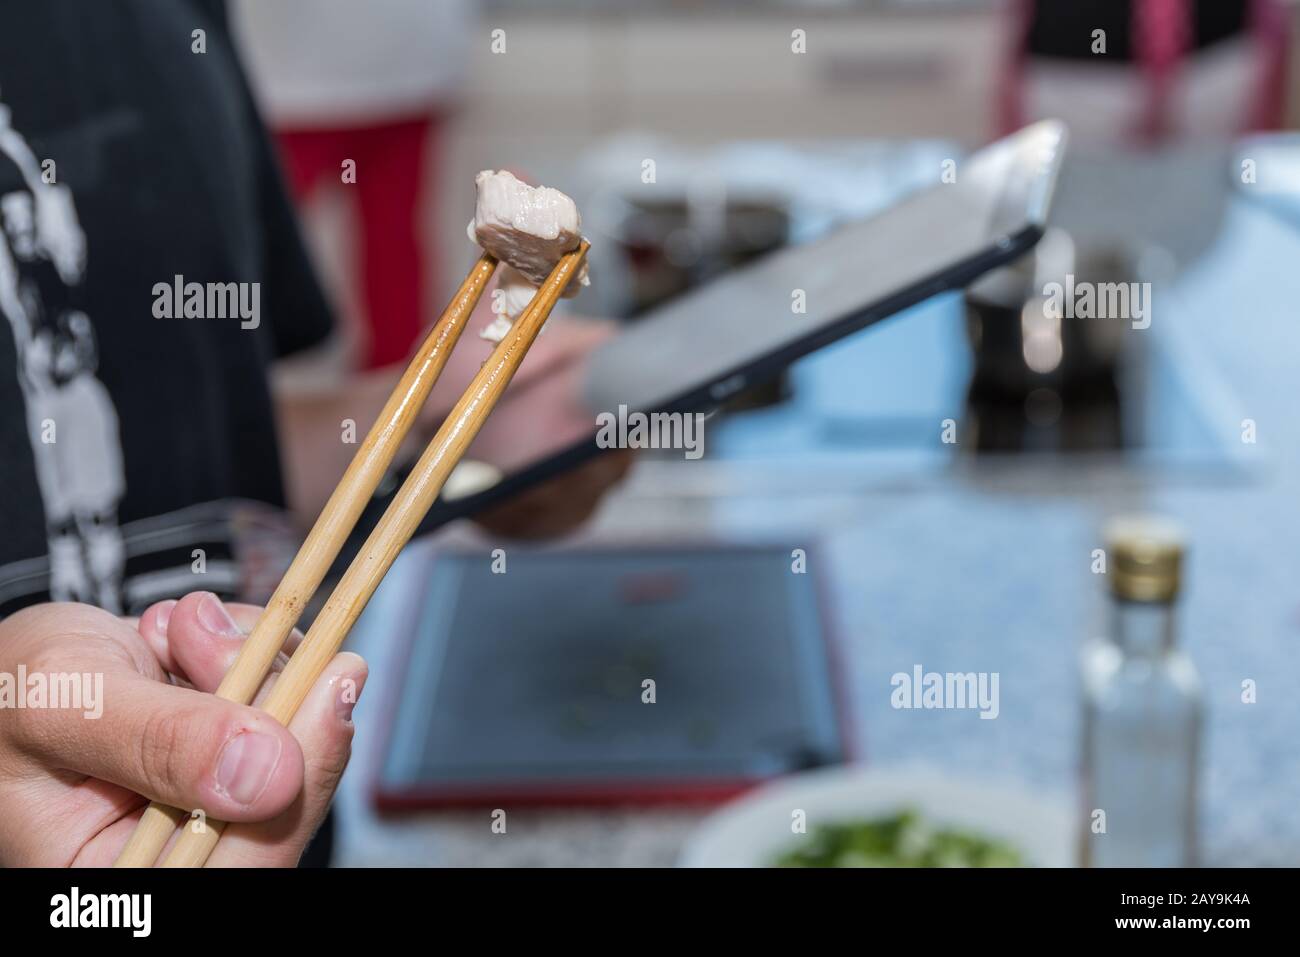 Kochanweisungen durch digitales Kochbuch - Essstäbchen mit Fleisch und Tablette Stockfoto